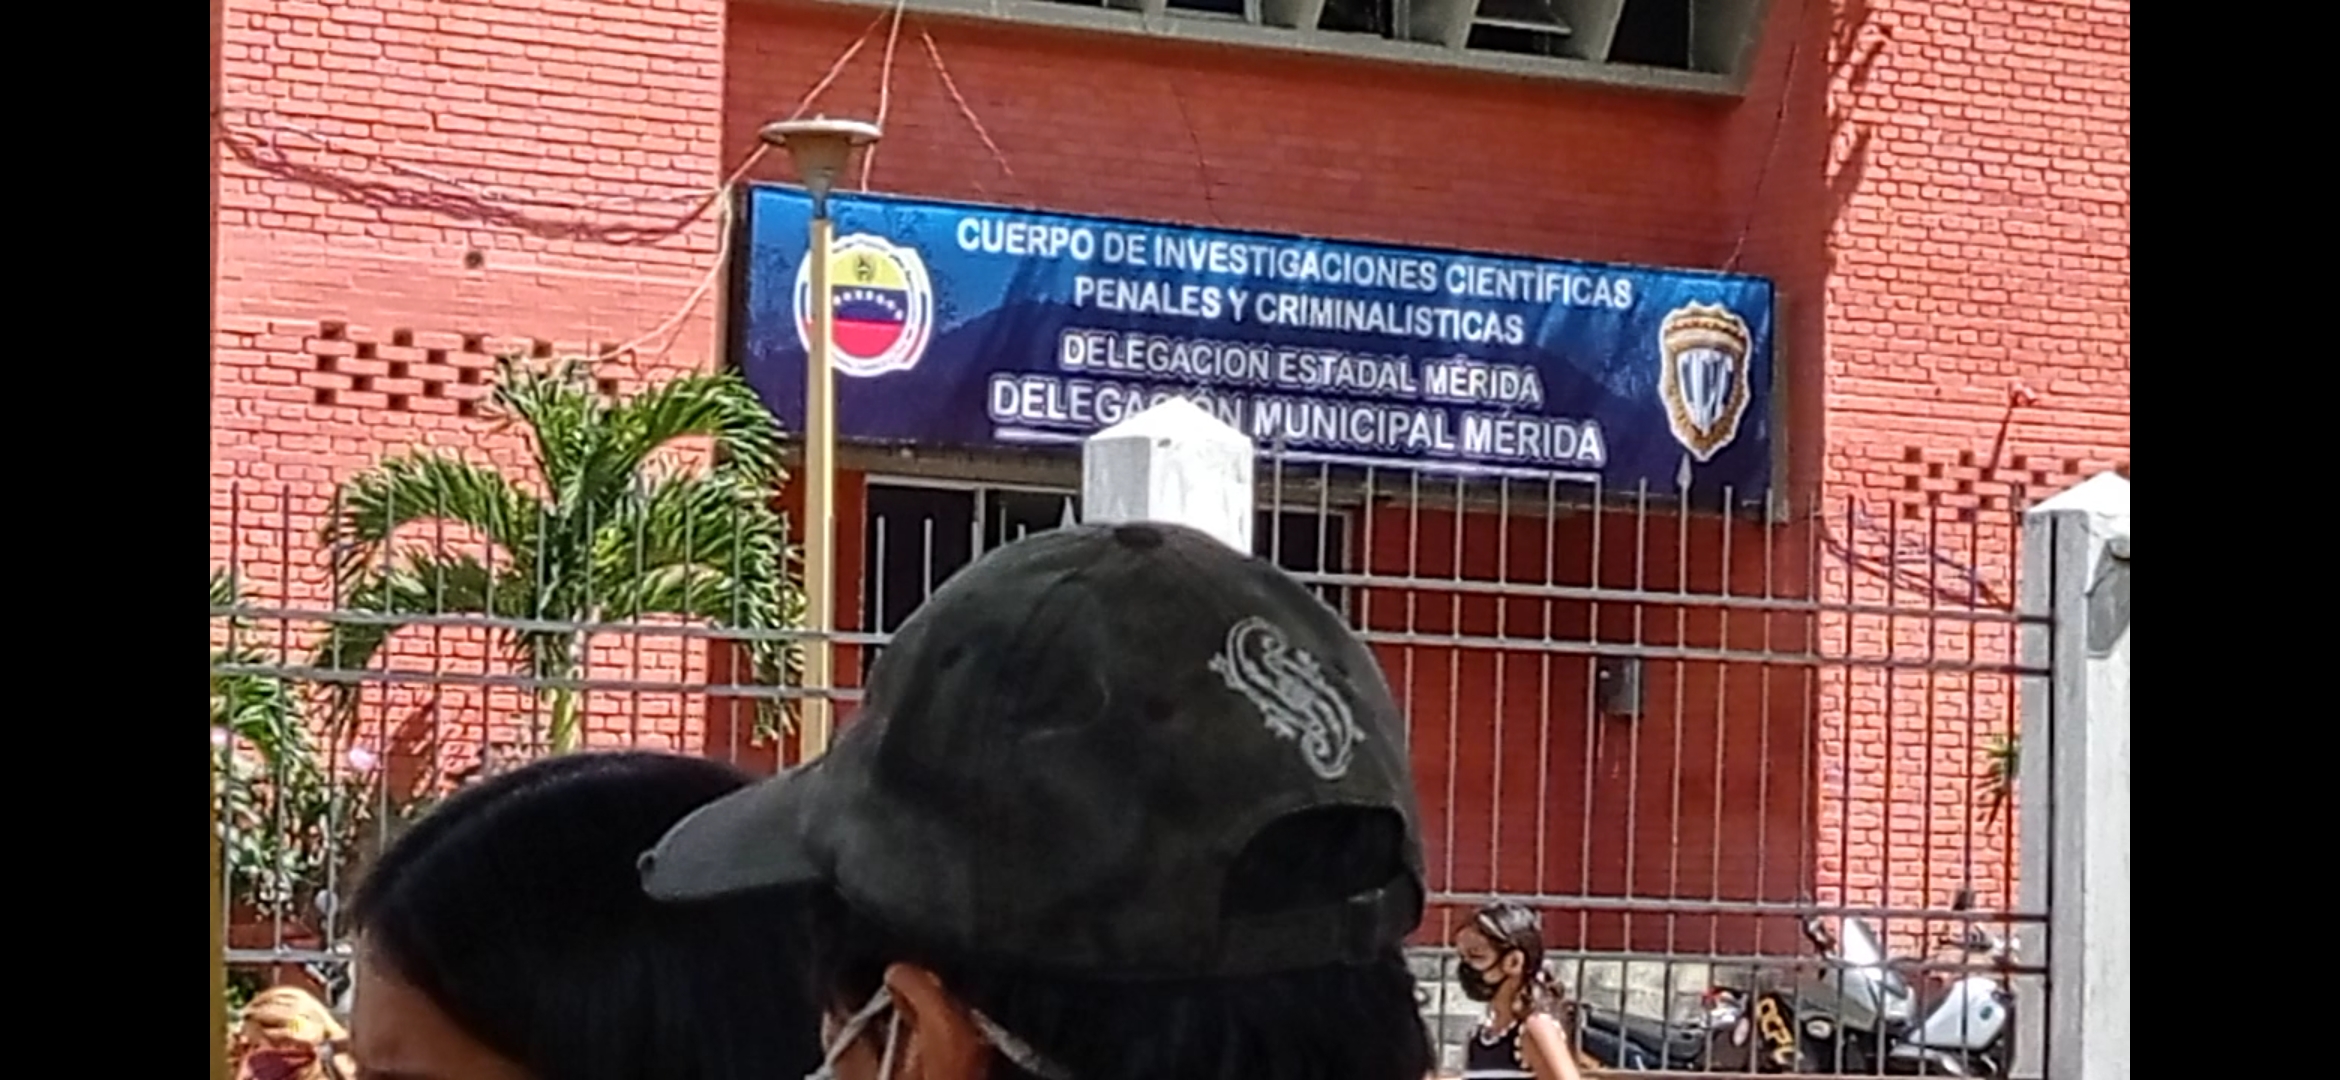 Les preocupa la pandemia por el Coronavirus: Familiares de detenidos en el CICPC de Mérida denunciaron enfermedades, hacinamiento y retardo procesal en este reclusorio